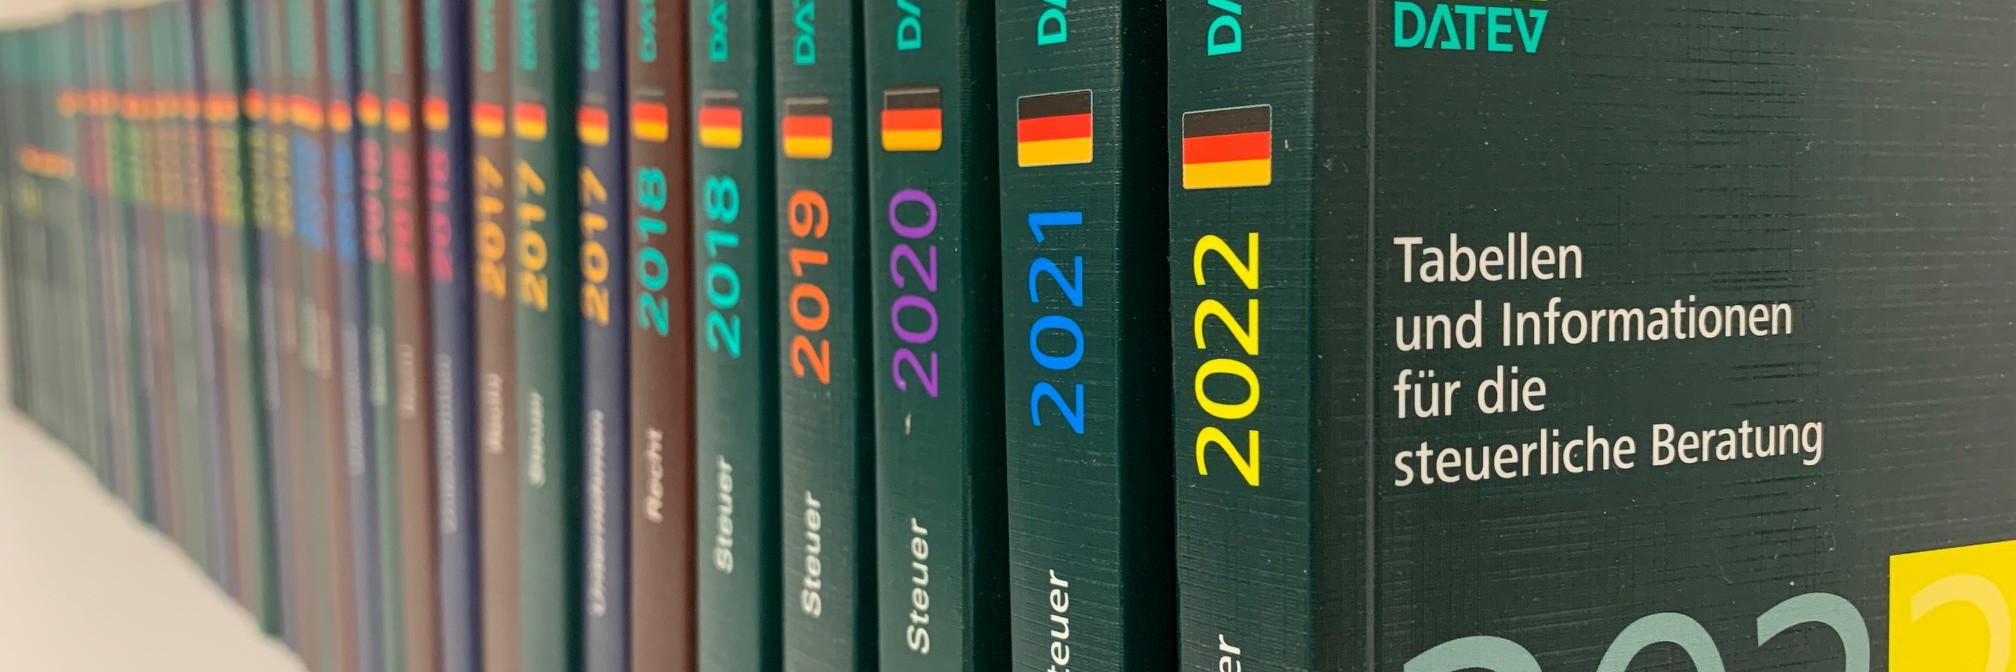 DATEV_Bücher_2022_Unterseite